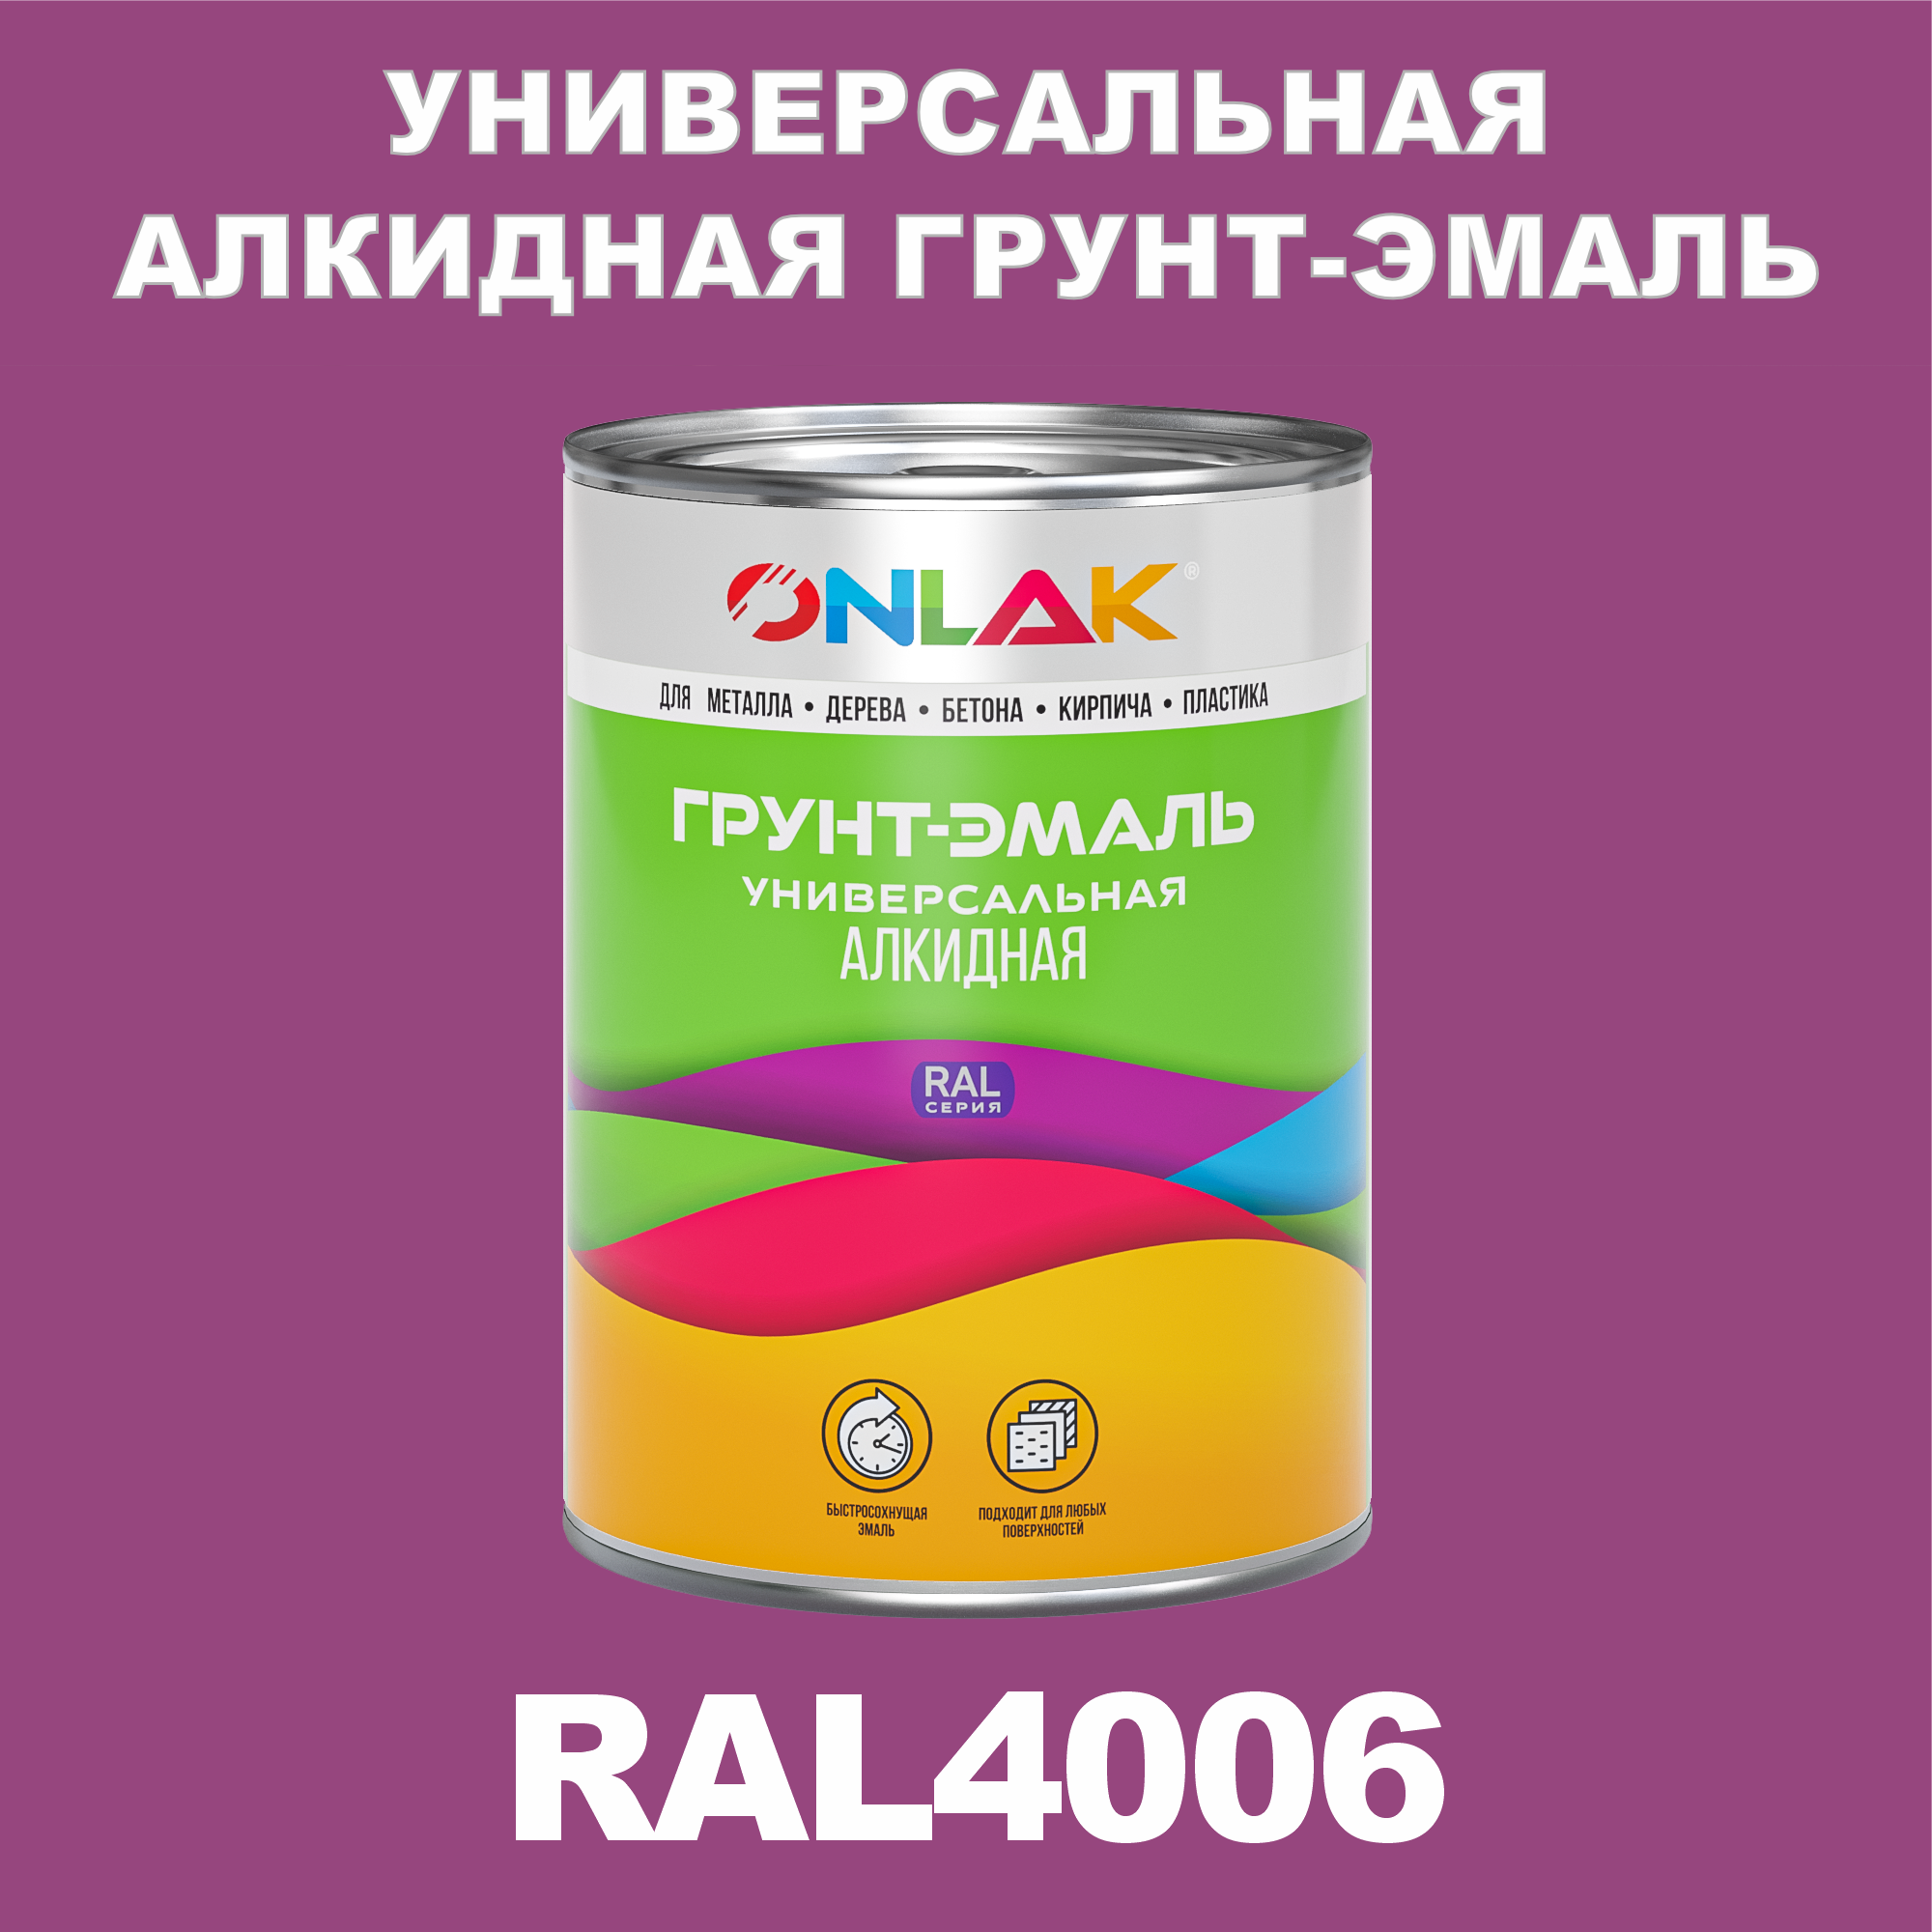 Грунт-эмаль ONLAK 1К RAL4006 антикоррозионная алкидная по металлу по ржавчине 1 кг антикоррозионная грунт эмаль onlak ral 4002 фиолетовый 720 мл